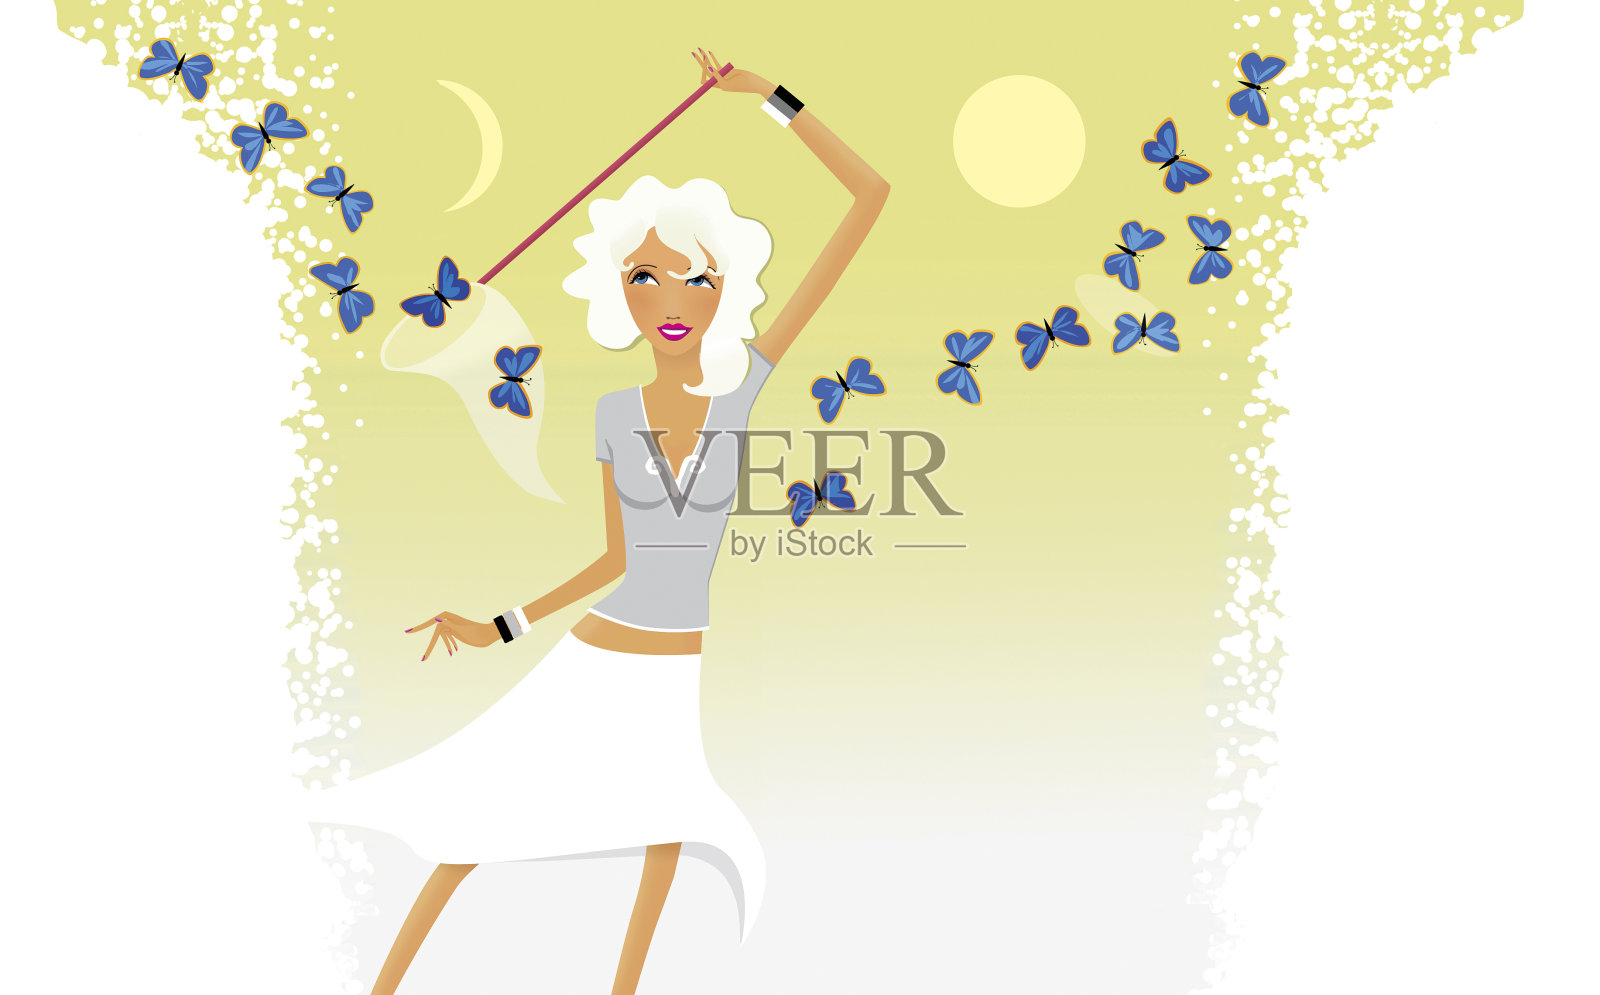 星座时尚女士。白羊座的女孩捉了一个蓝色蝴蝶的网。插画图片素材